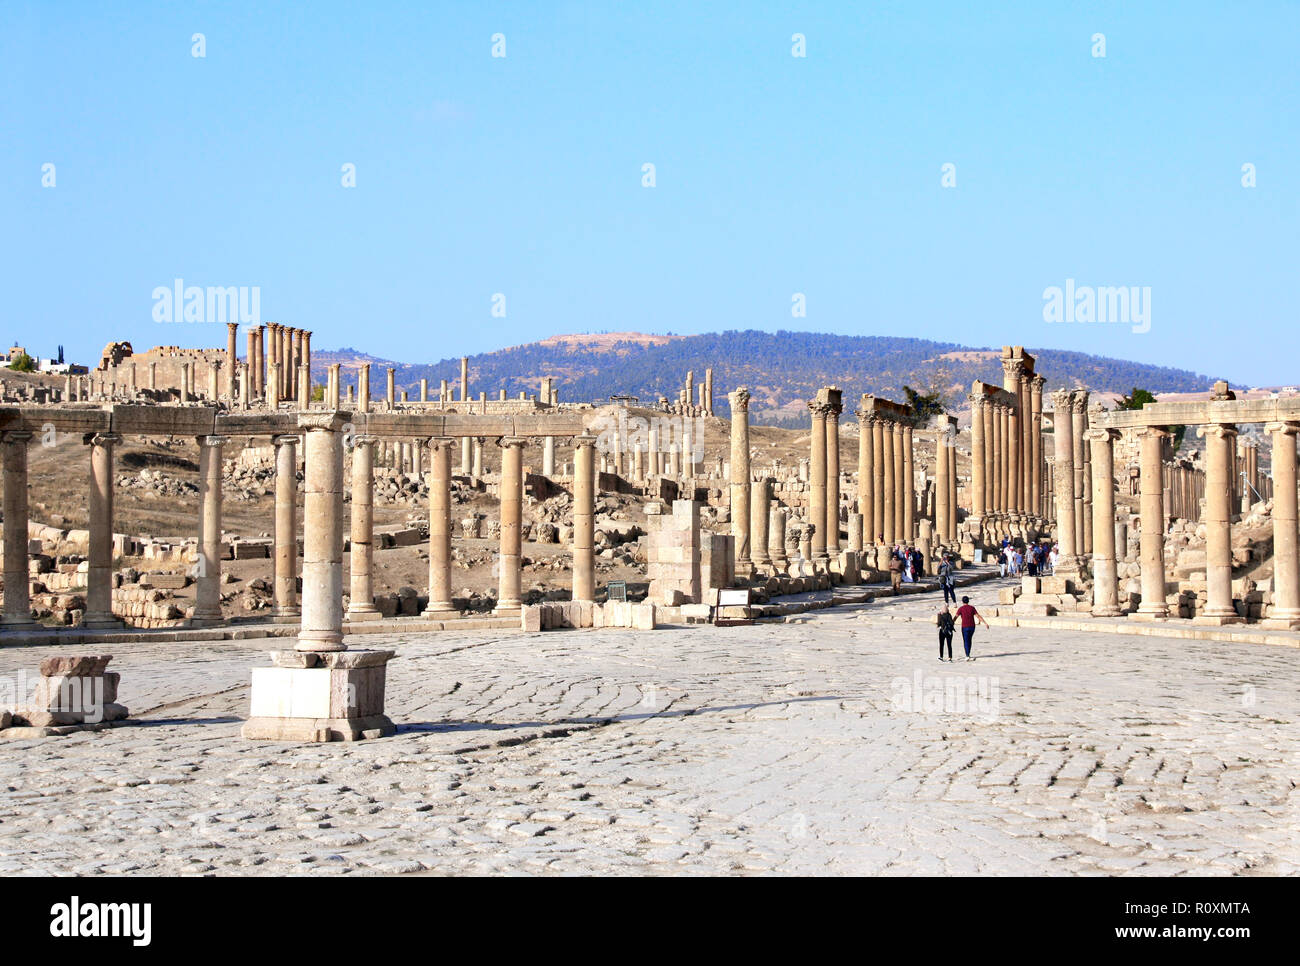 Plaza ovale avec colonnes ioniques en Jerash (Gérasa), ancienne capitale romaine et la plus grande ville du gouvernorat de Jerash, Jordanie, Moyen-Orient. UNESCO World heri Banque D'Images